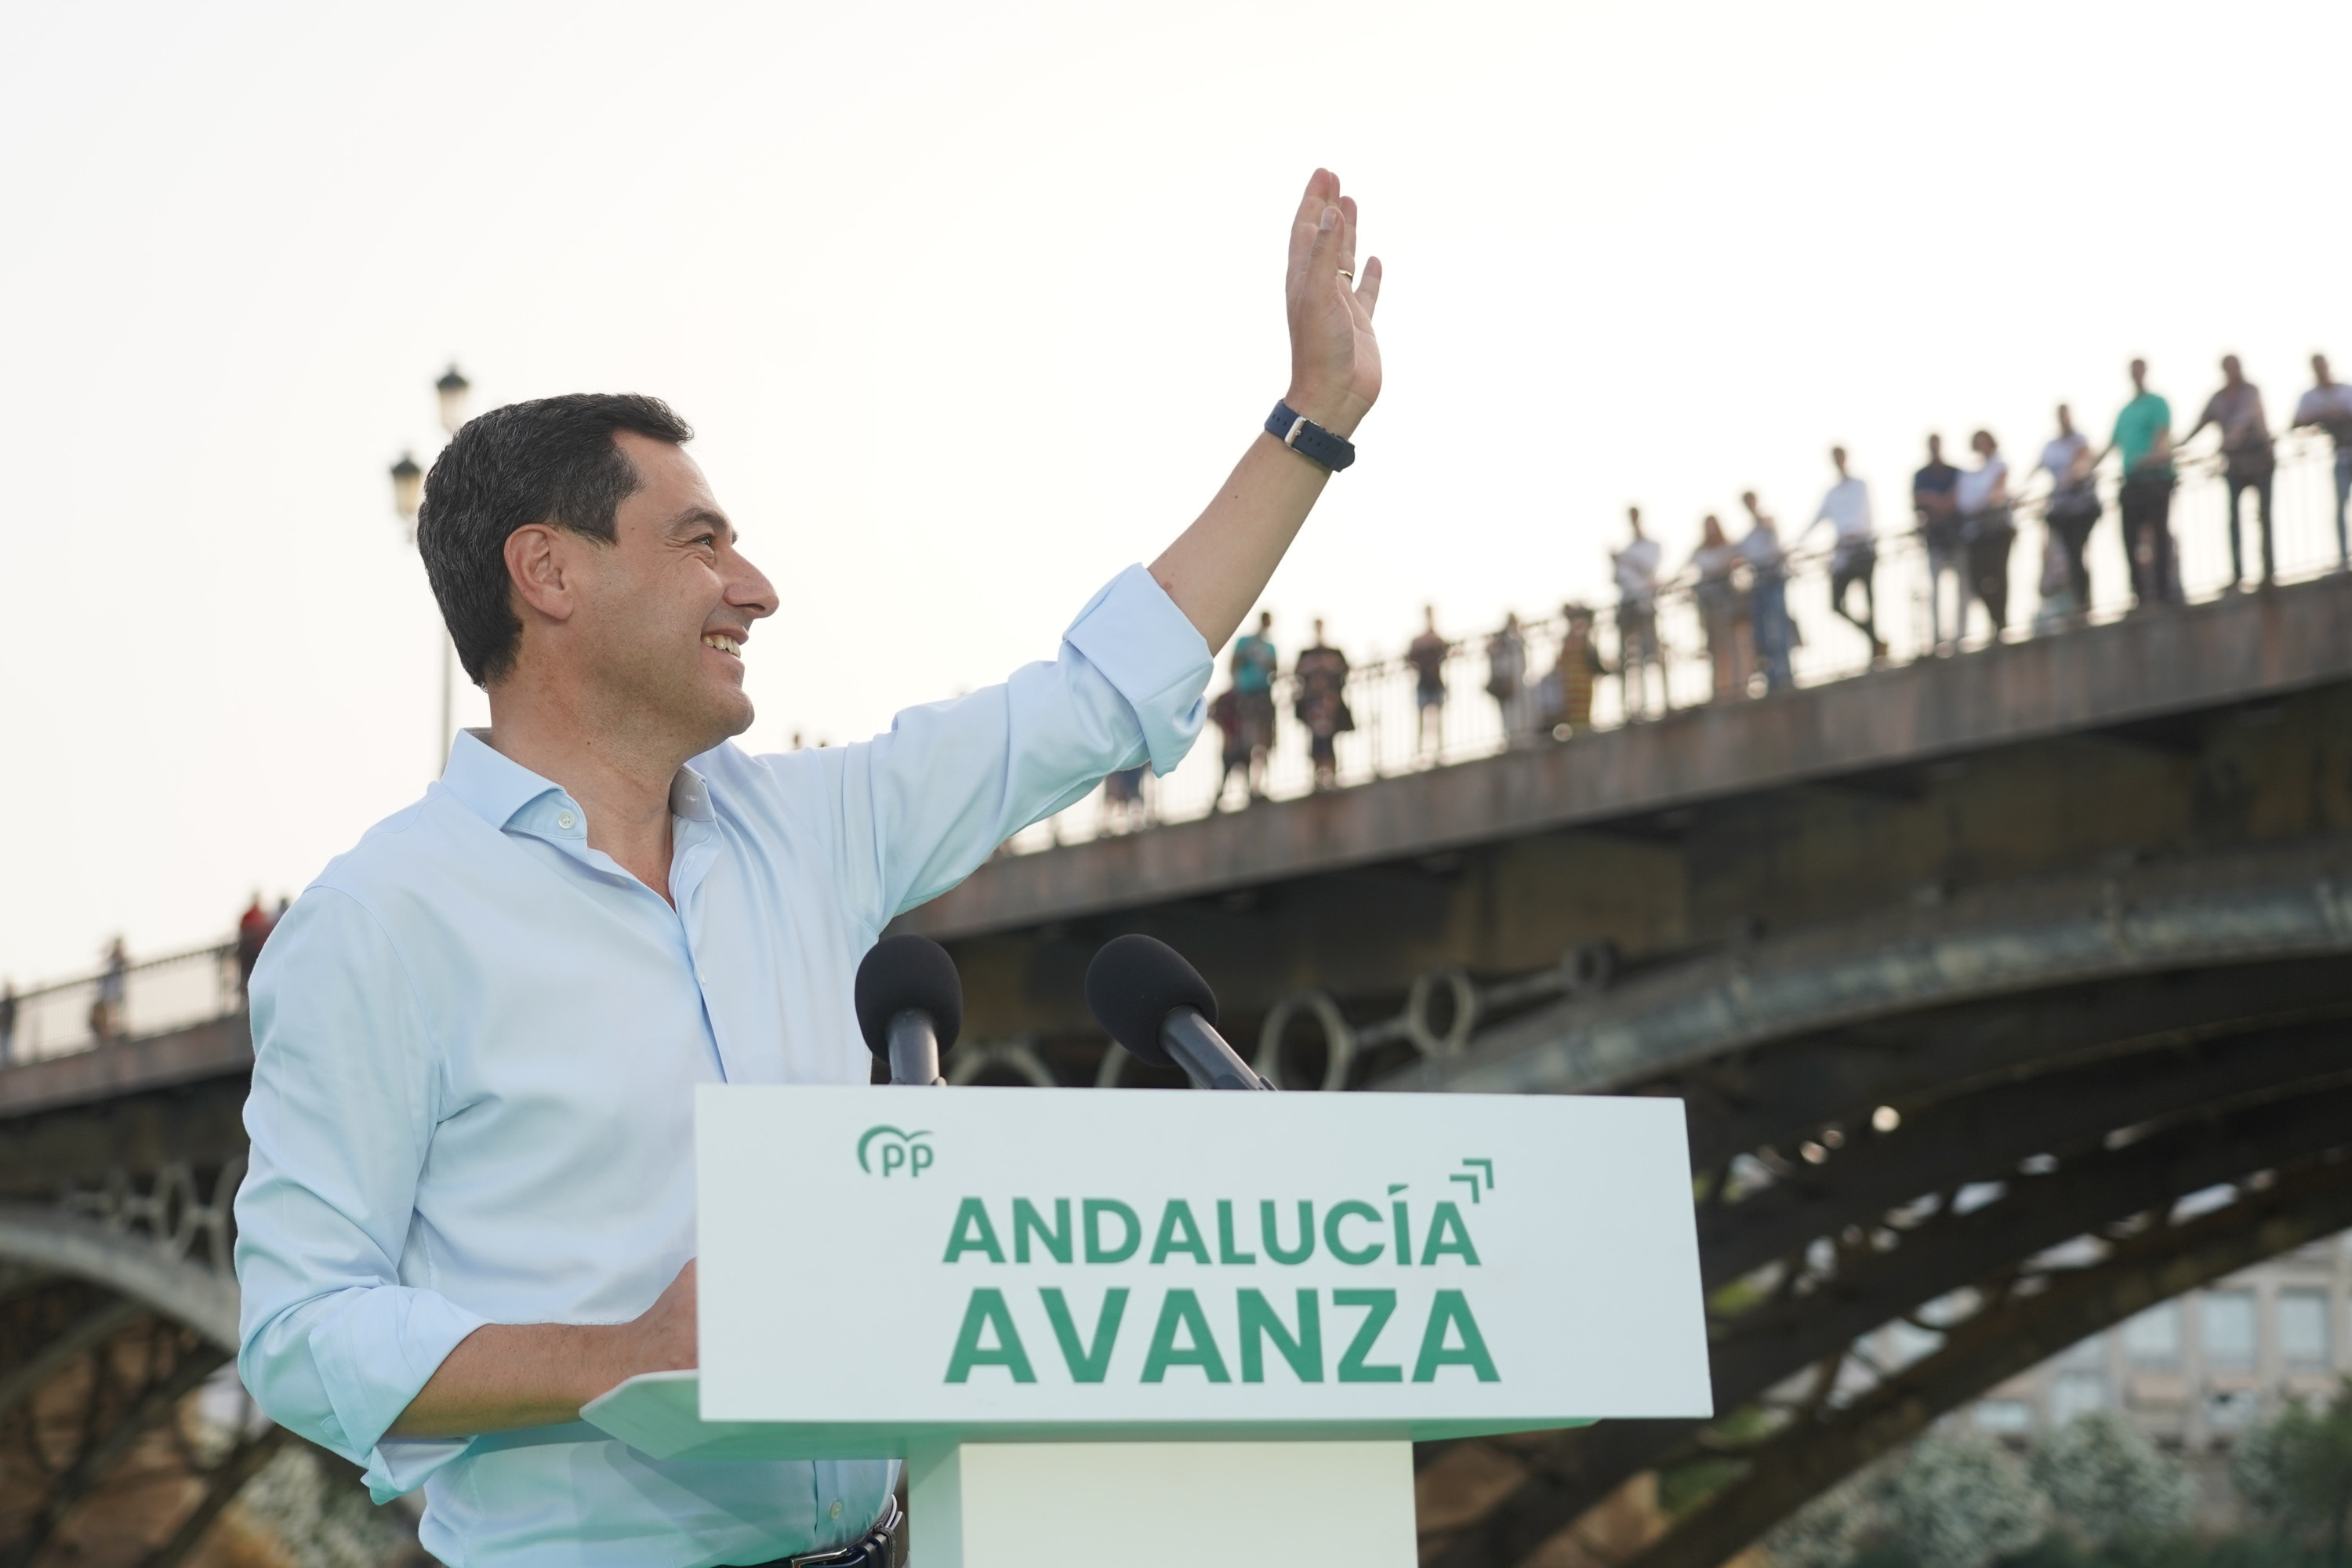 El presidente andaluz y candidato del PP, Juama Moreno, en su mitin de cierre en Sevilla con el puente de Triana al fondo.